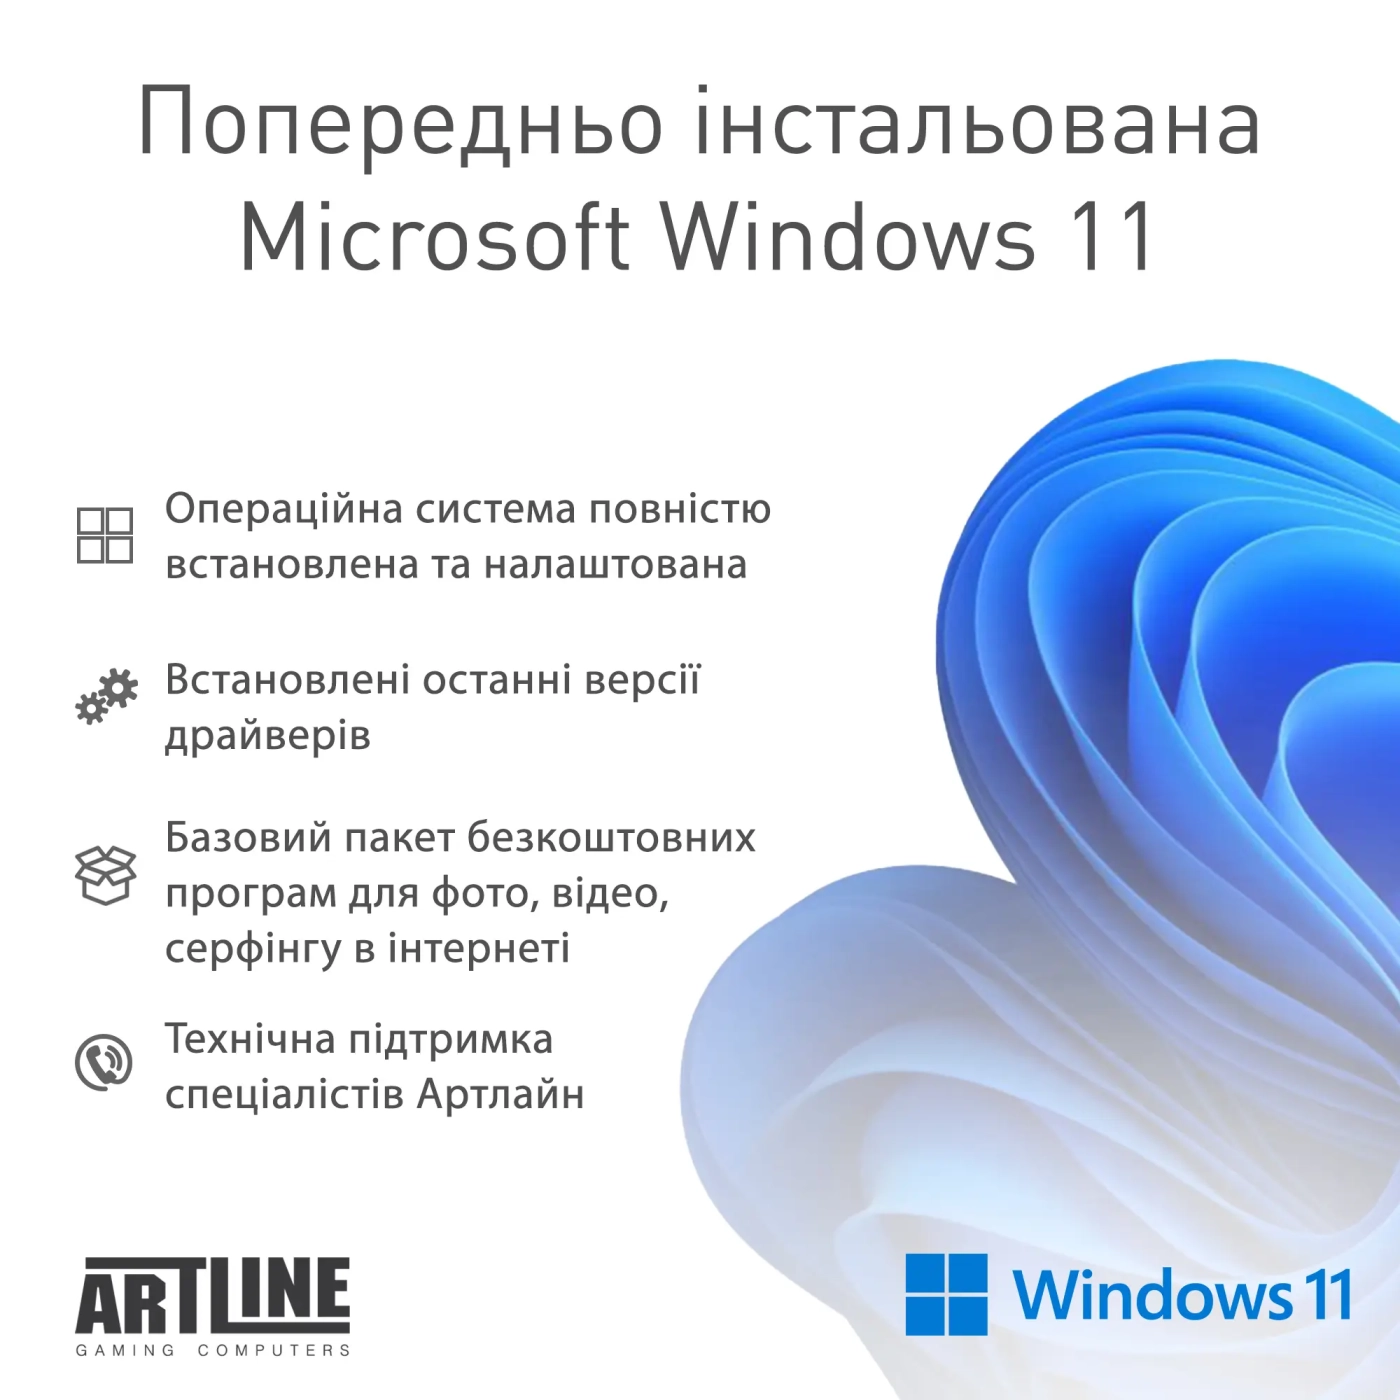 Купить Компьютер ARTLINE Gaming D31 Windows 11 Home (D31v12Win) - фото 12